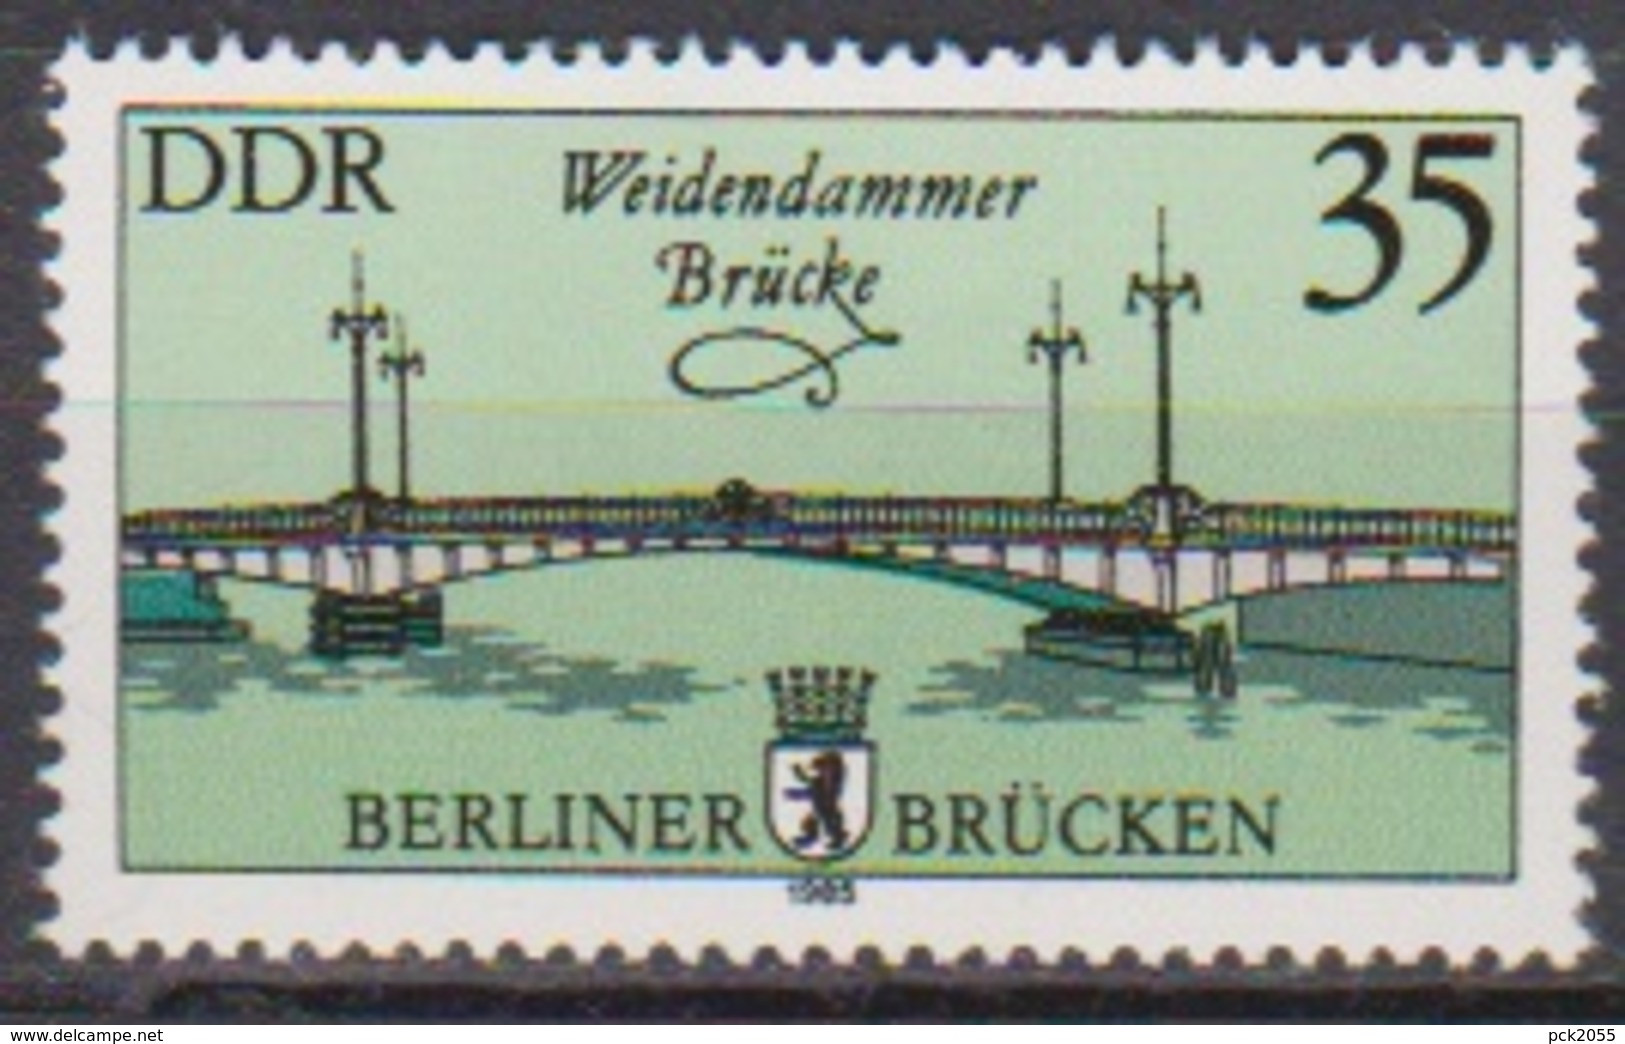 DDR 1985 MiNr.2974  ** Postfr. Historische Brücken In Berlin ( 8035 )günstige Verandkosten - Neufs